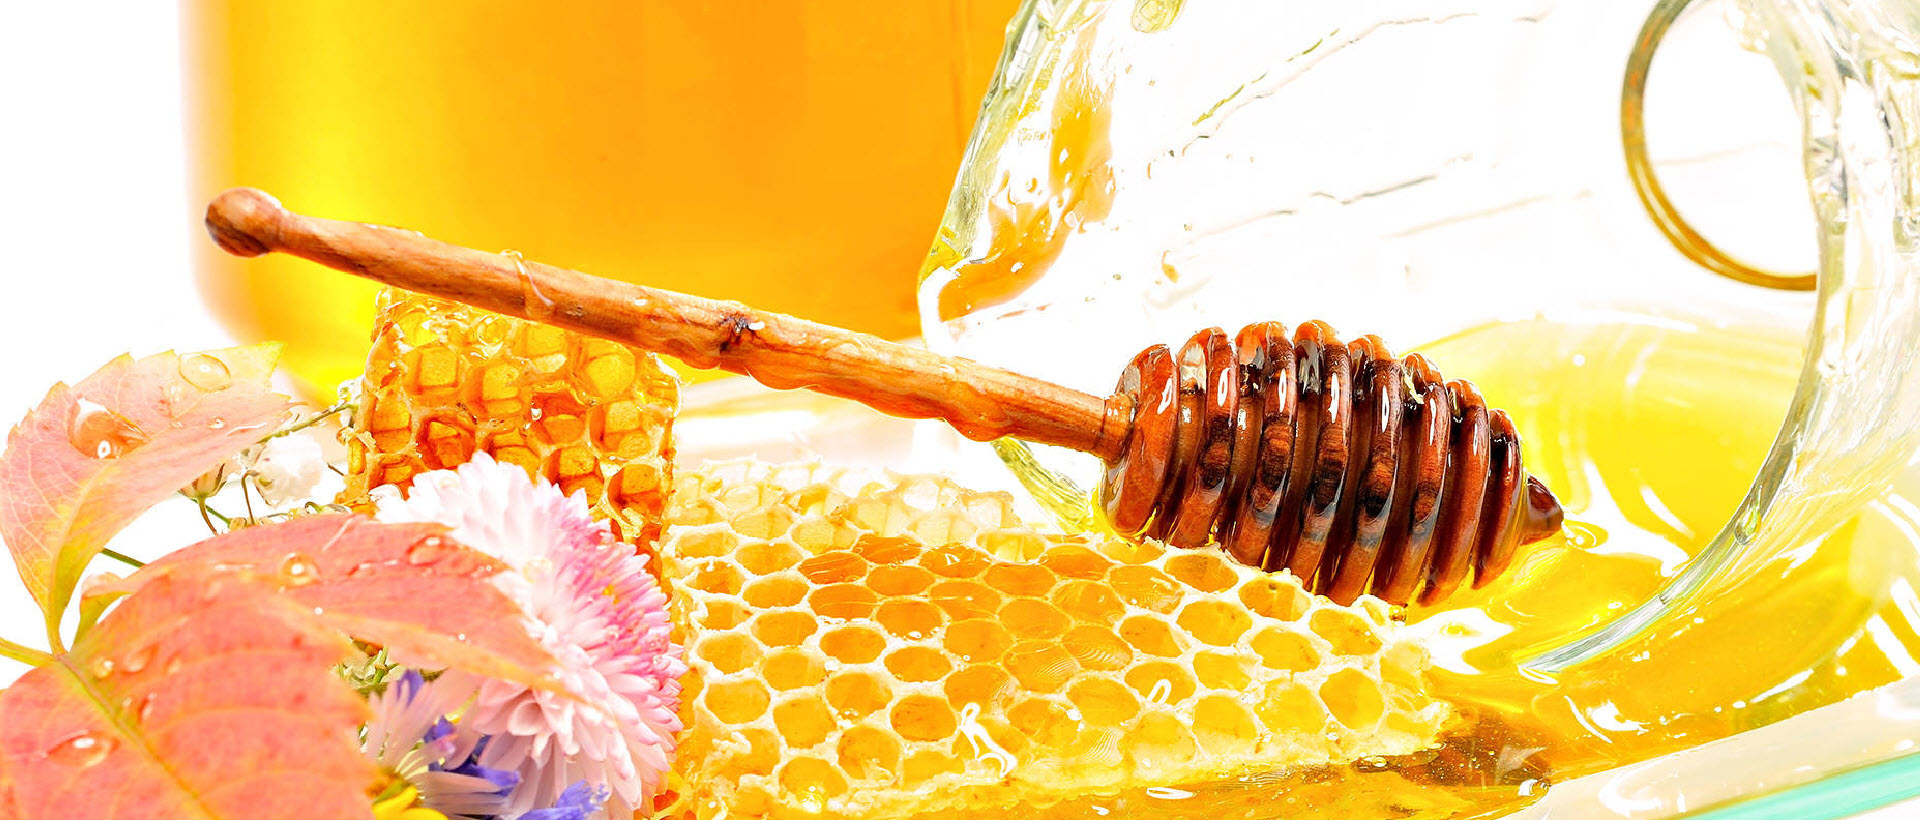 DOMACI MED PODGORICA CRNA GORA | Pčelarstvo med Maraš